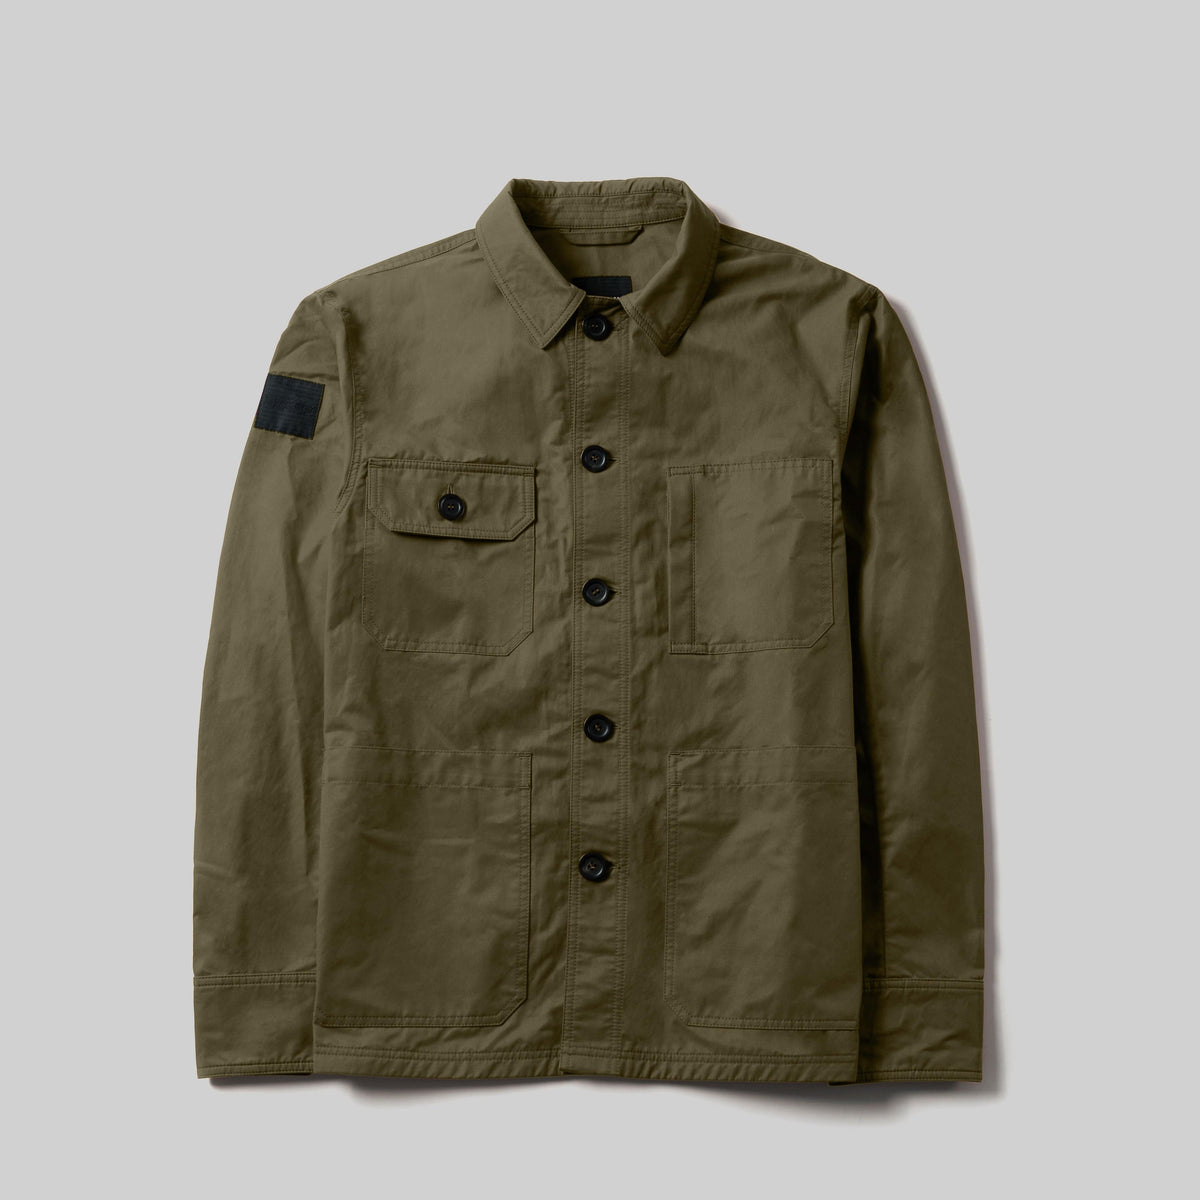 FRAHM Jacket Jacket S / Regular / Olive Green Original Lightweight Worker&#39;s Jacket